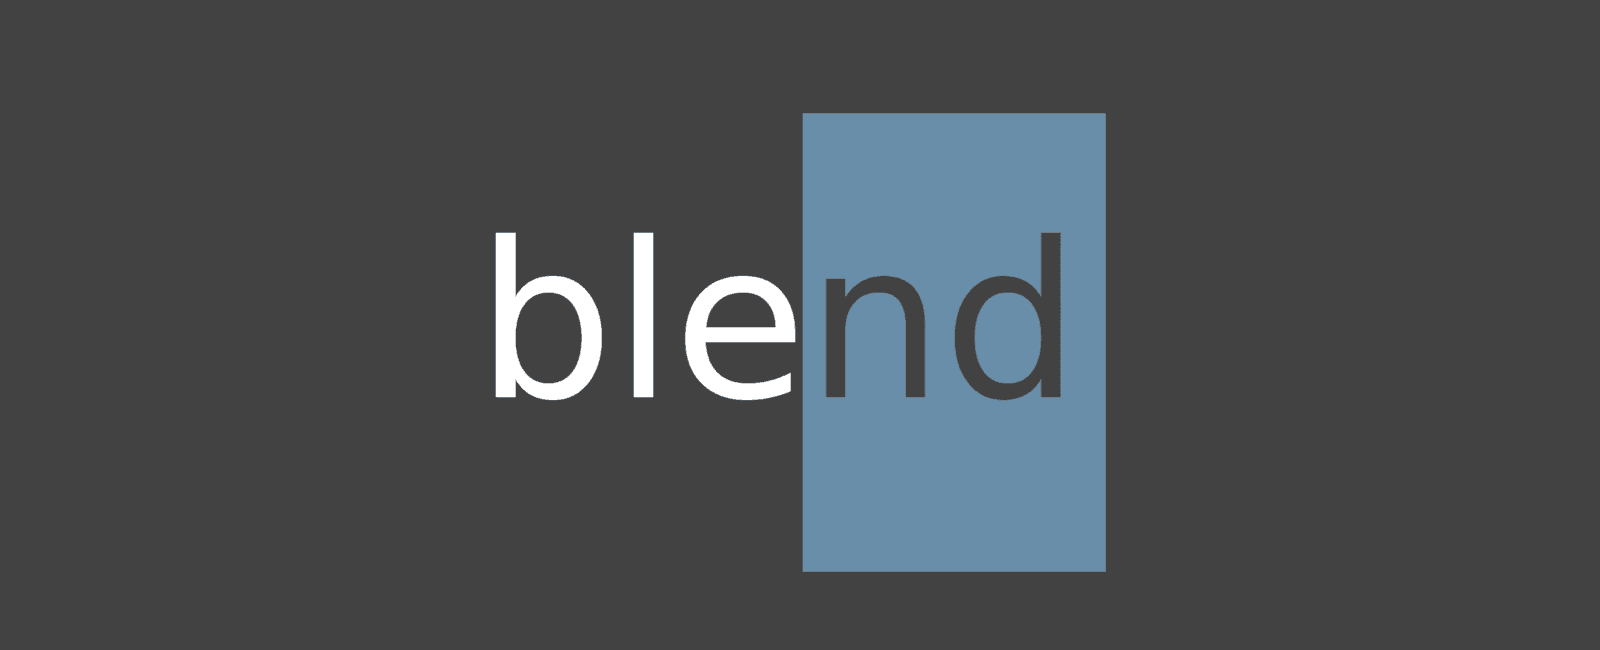 「基础」CSS Blend Modes 混合模式的学习与整理（下）